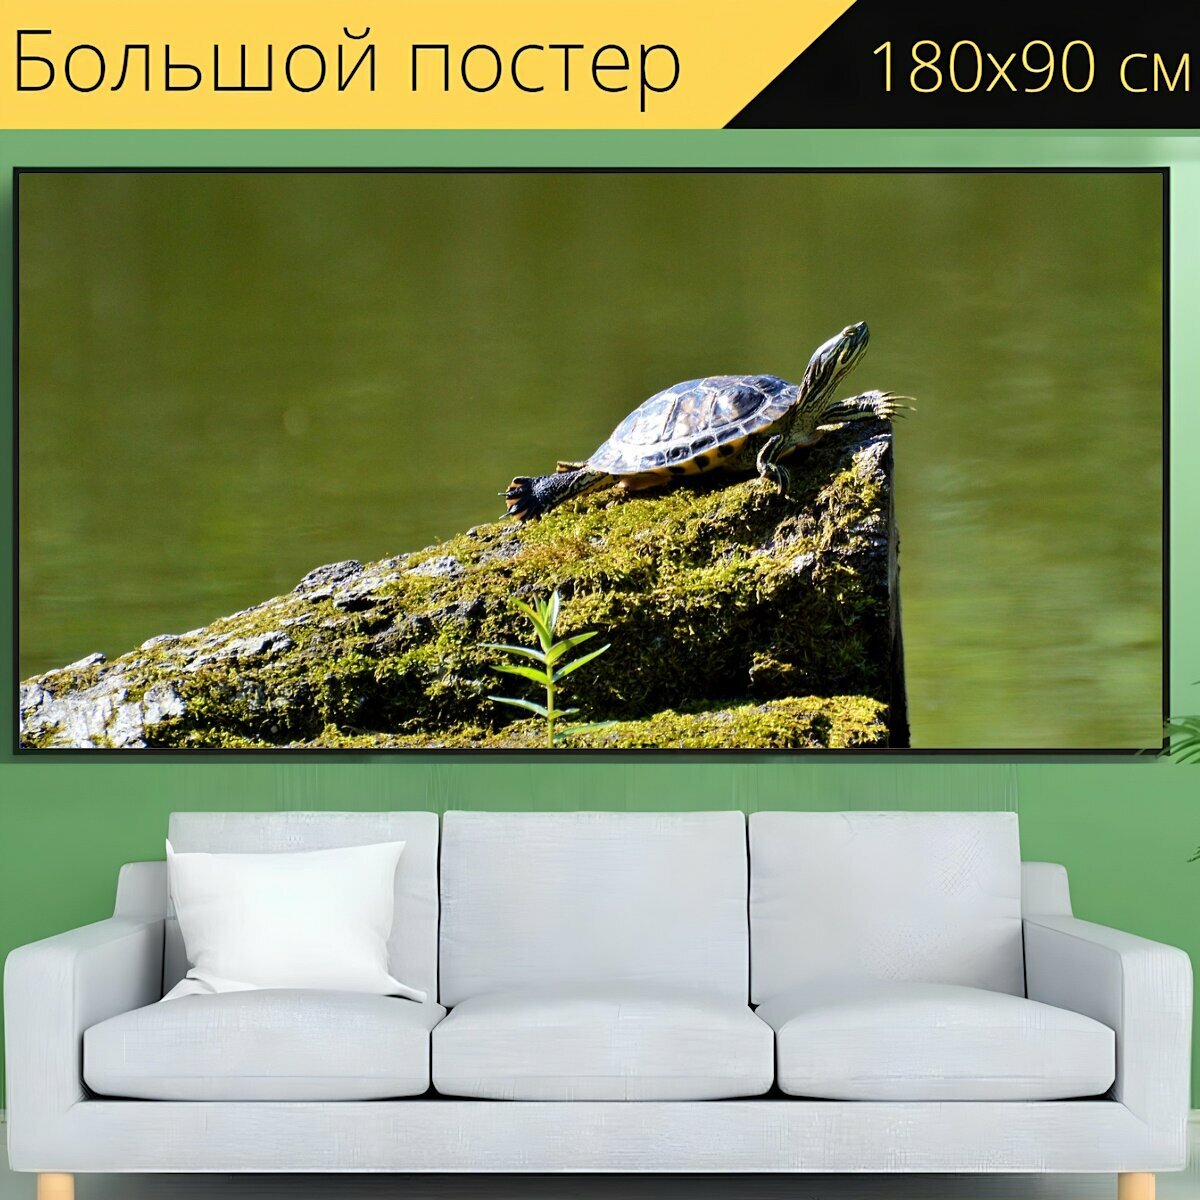 Большой постер "Черепаха, рептилия, воды черепаха" 180 x 90 см. для интерьера